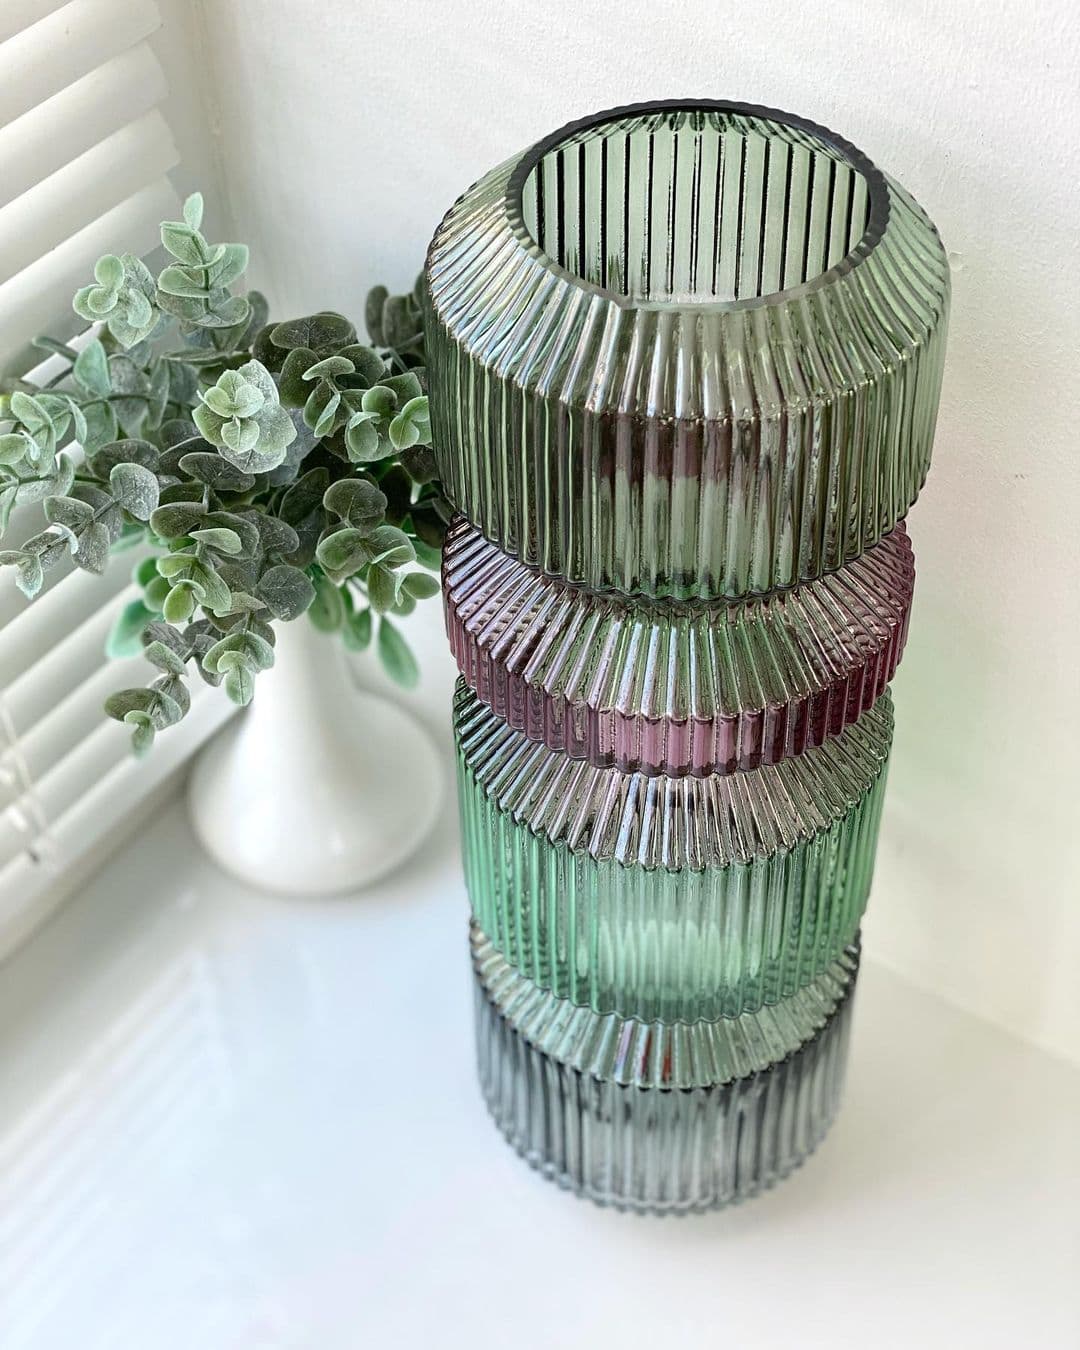 Купить оригинальные вазы в интернет-магазине Homedorf